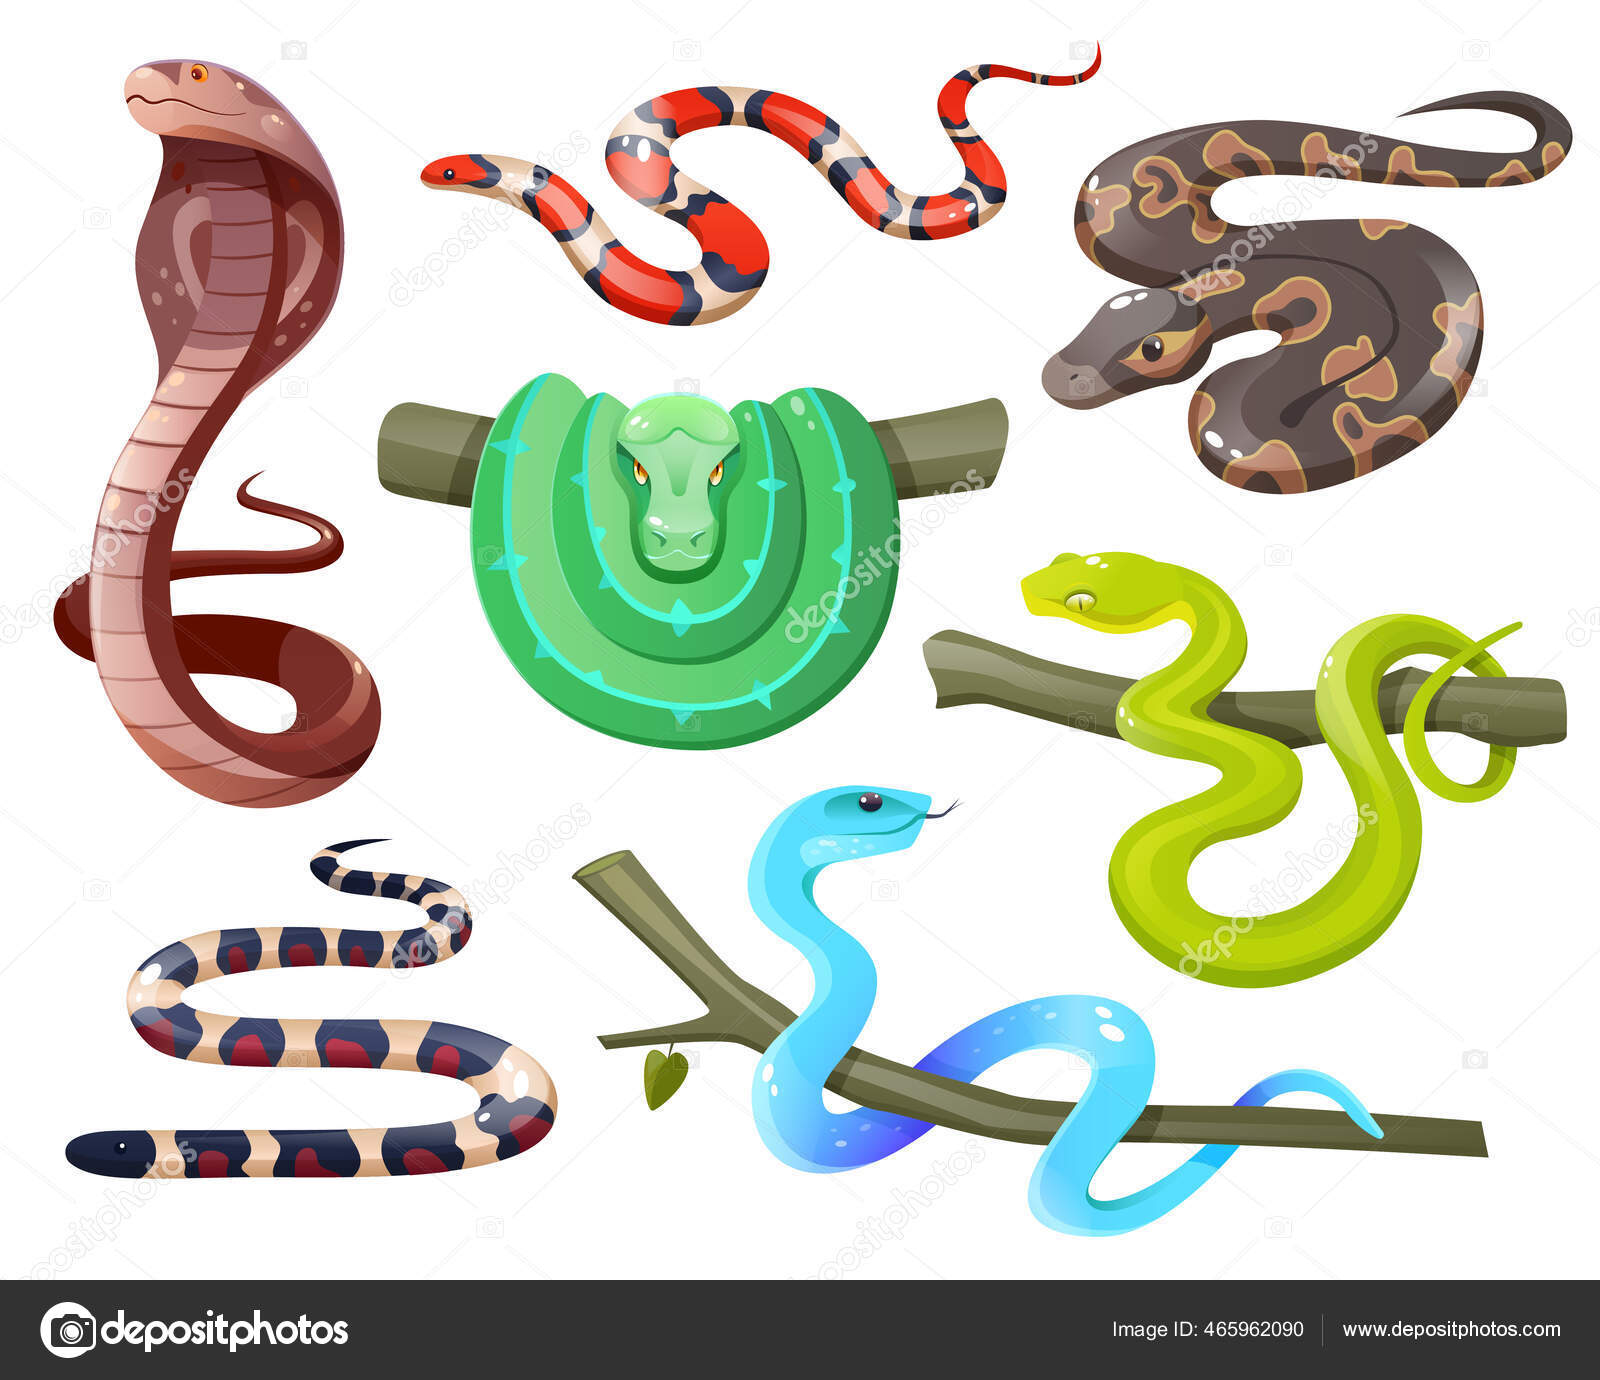 Chave de identificação ilustrada para reconhecimento das cobras corais